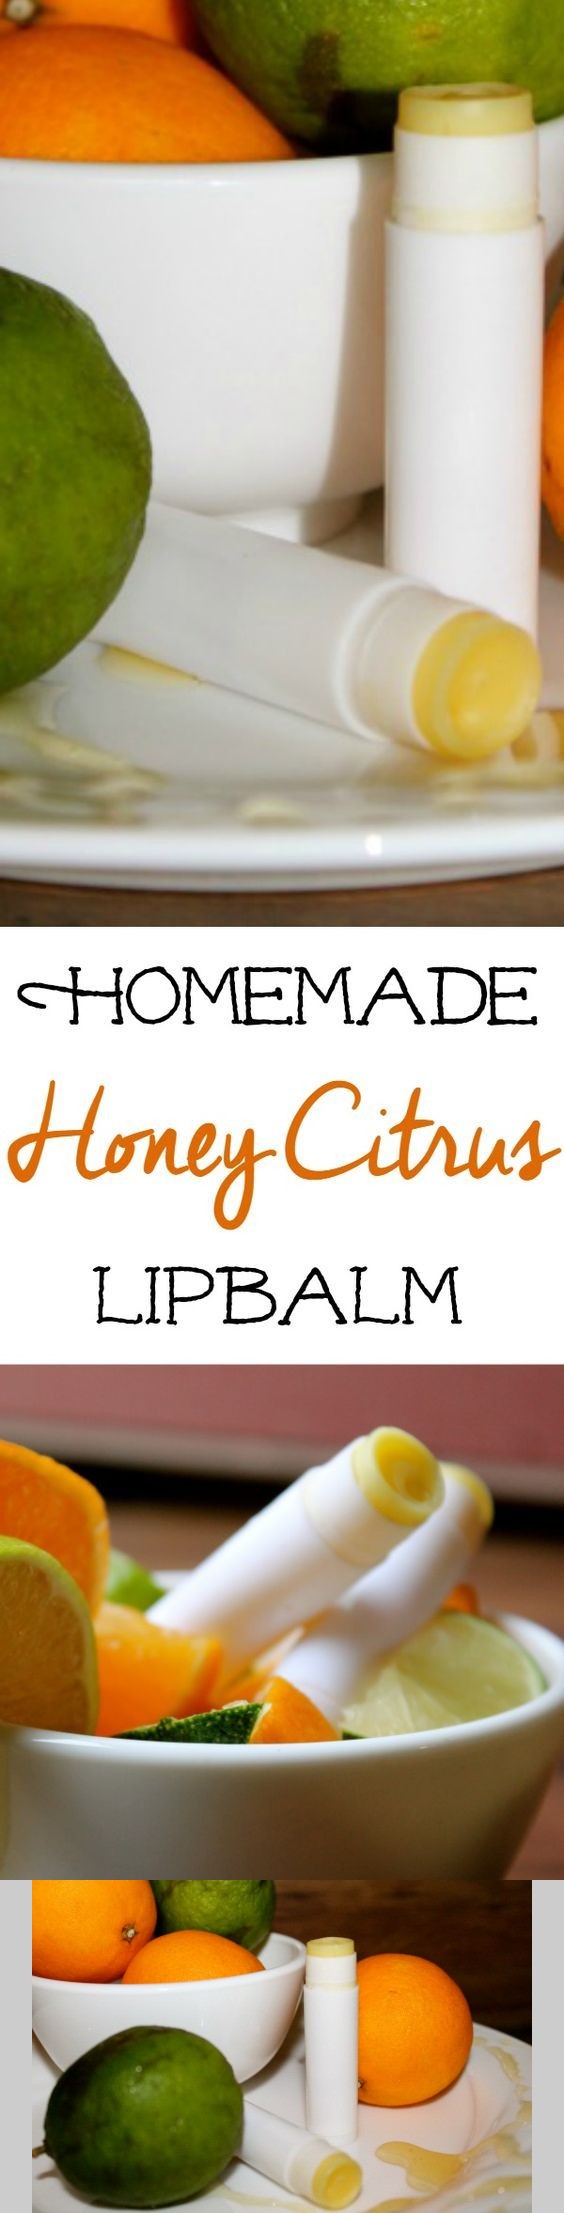 Homemade Honey Citrus Lipbalm